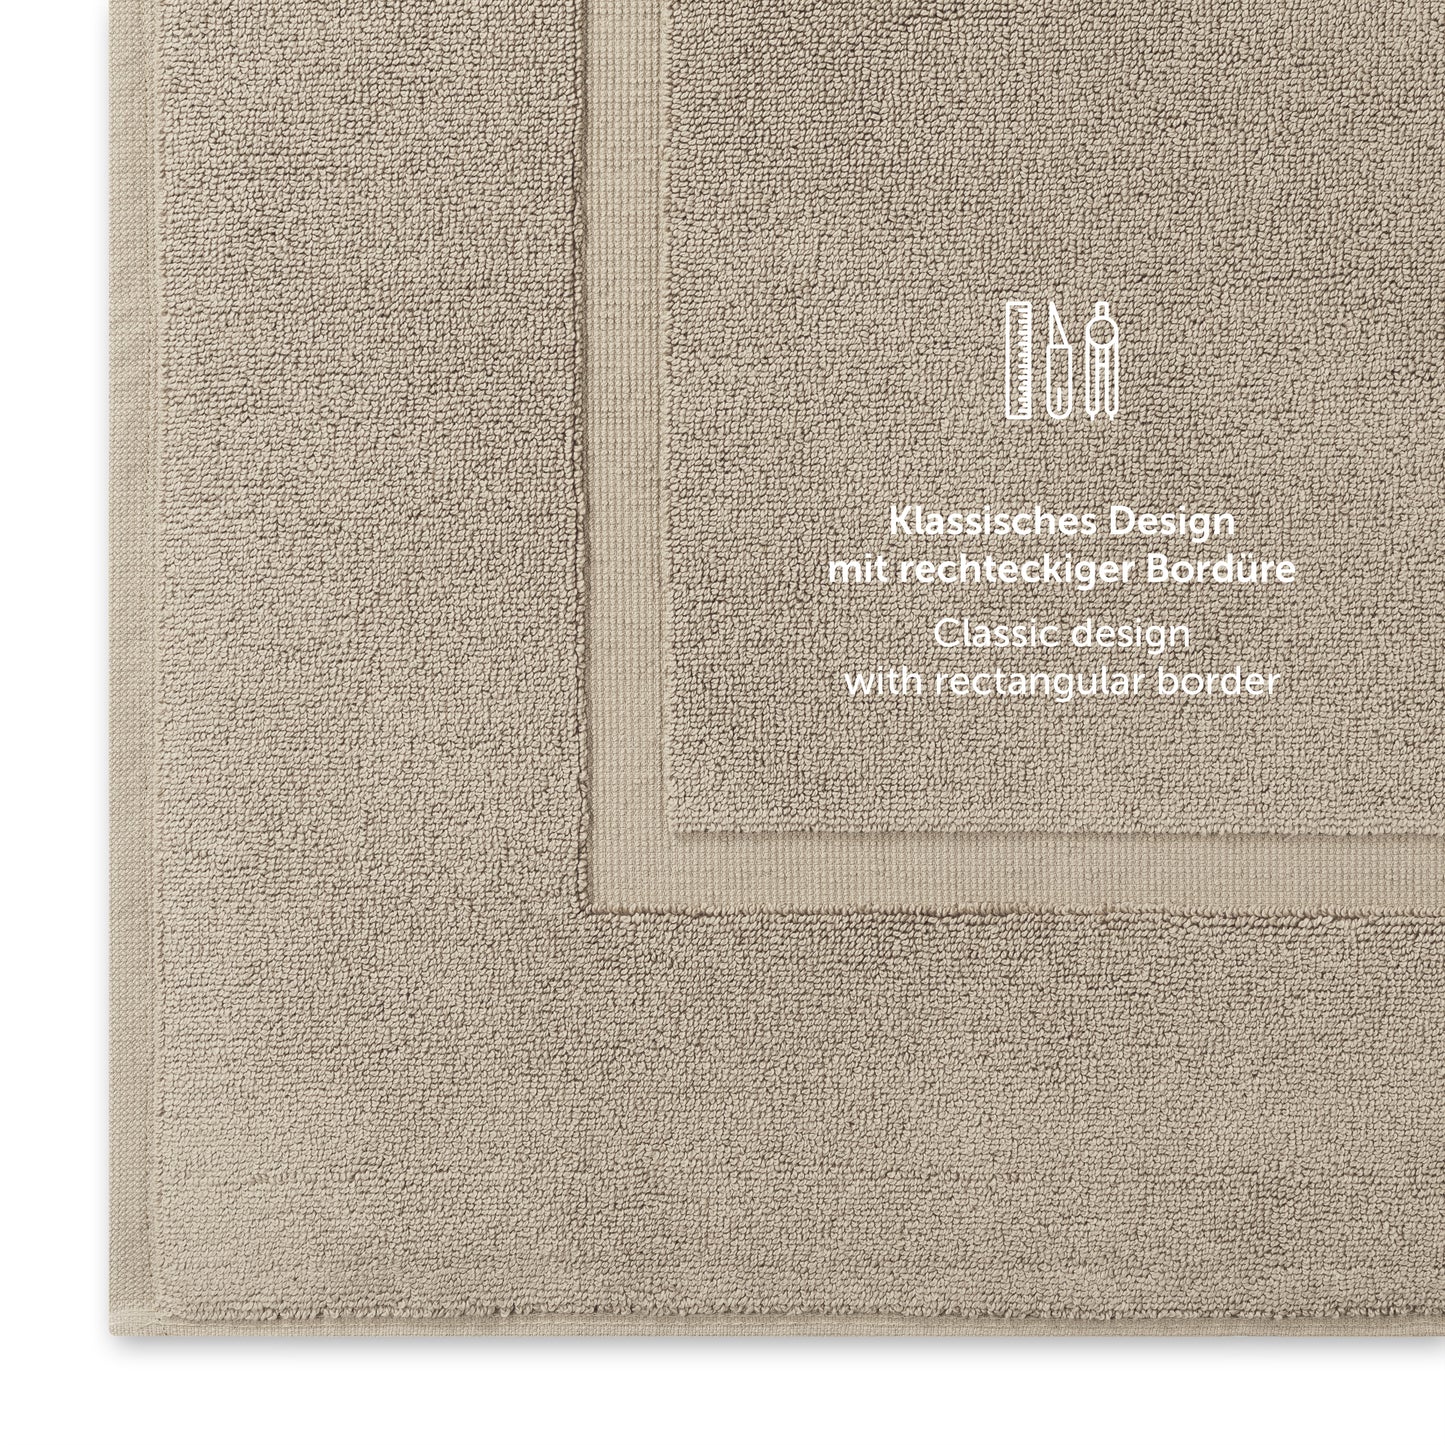 Taupe Handtuch mit klassischem Design und Bordürendetail.